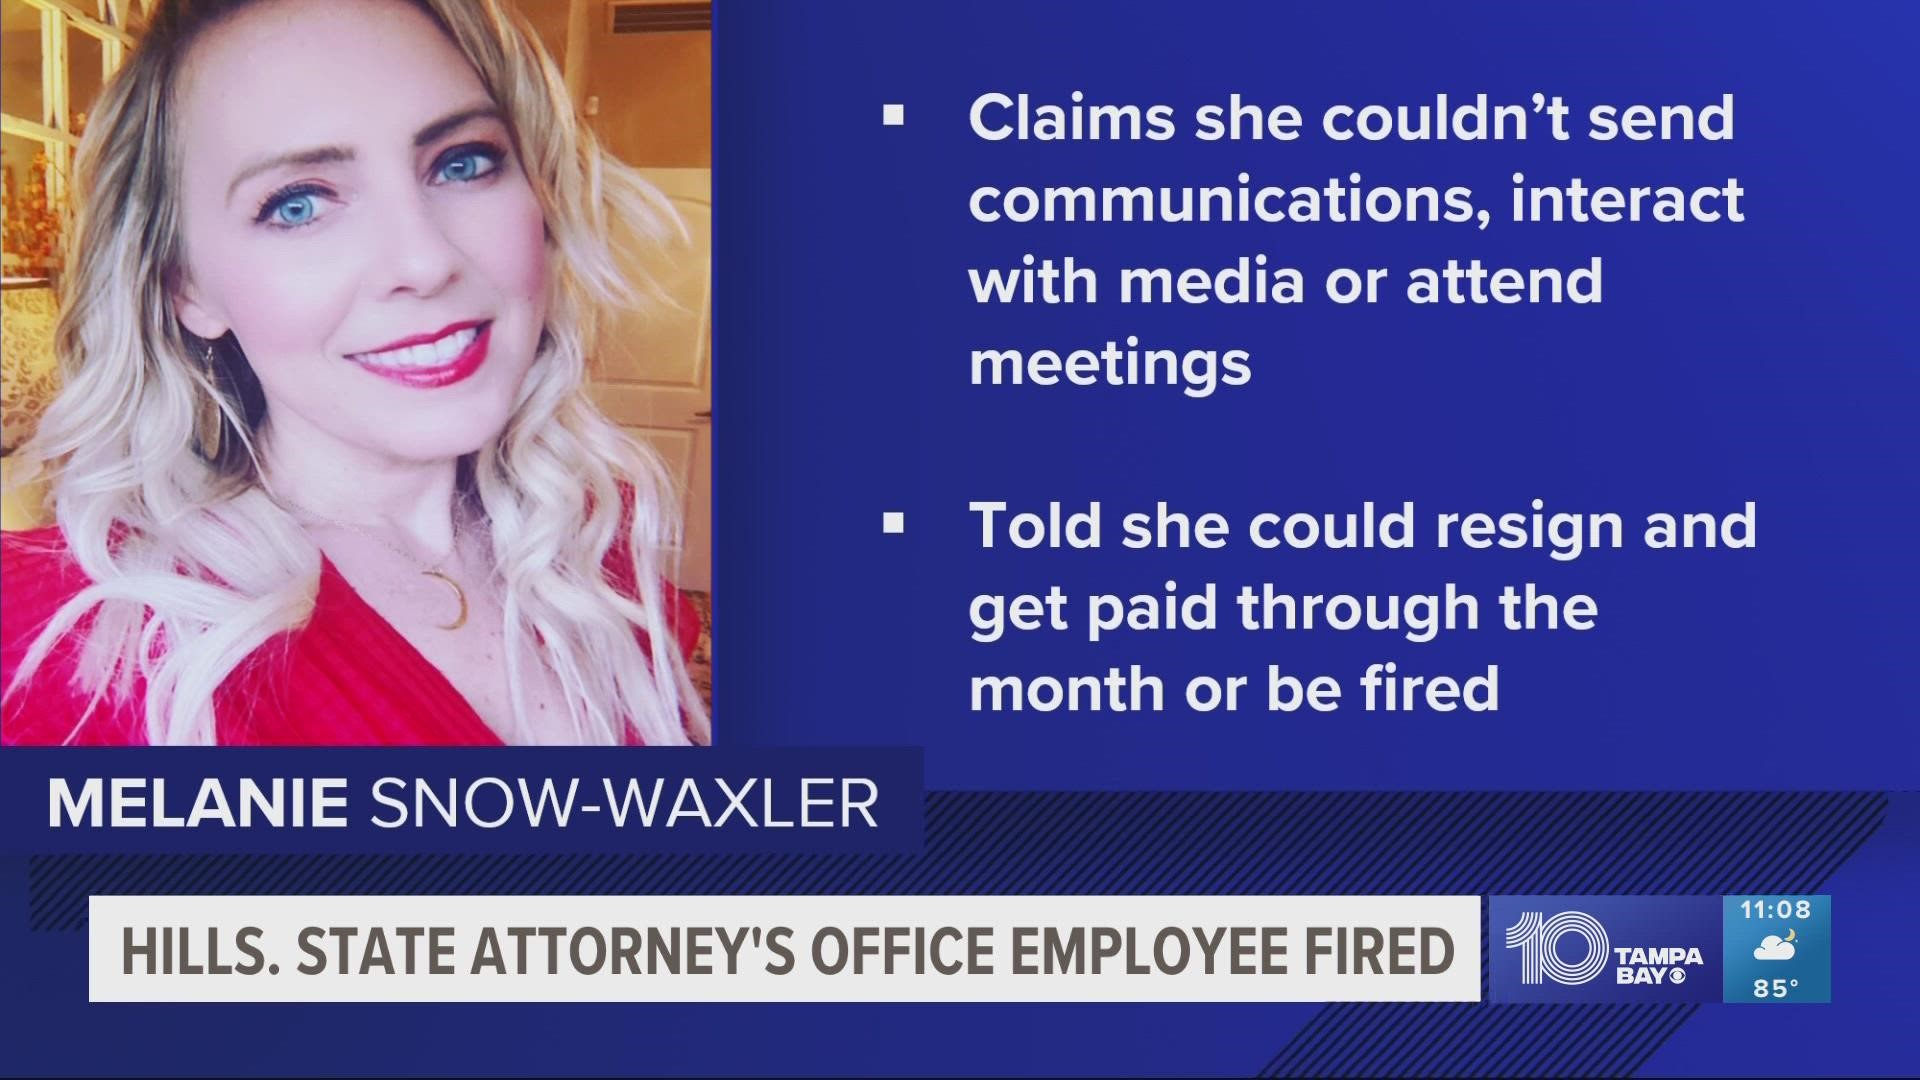 Melanie Snow-Waxler says her termination was "unlawful." She began working under now-suspended State Attorney Andrew Warren.